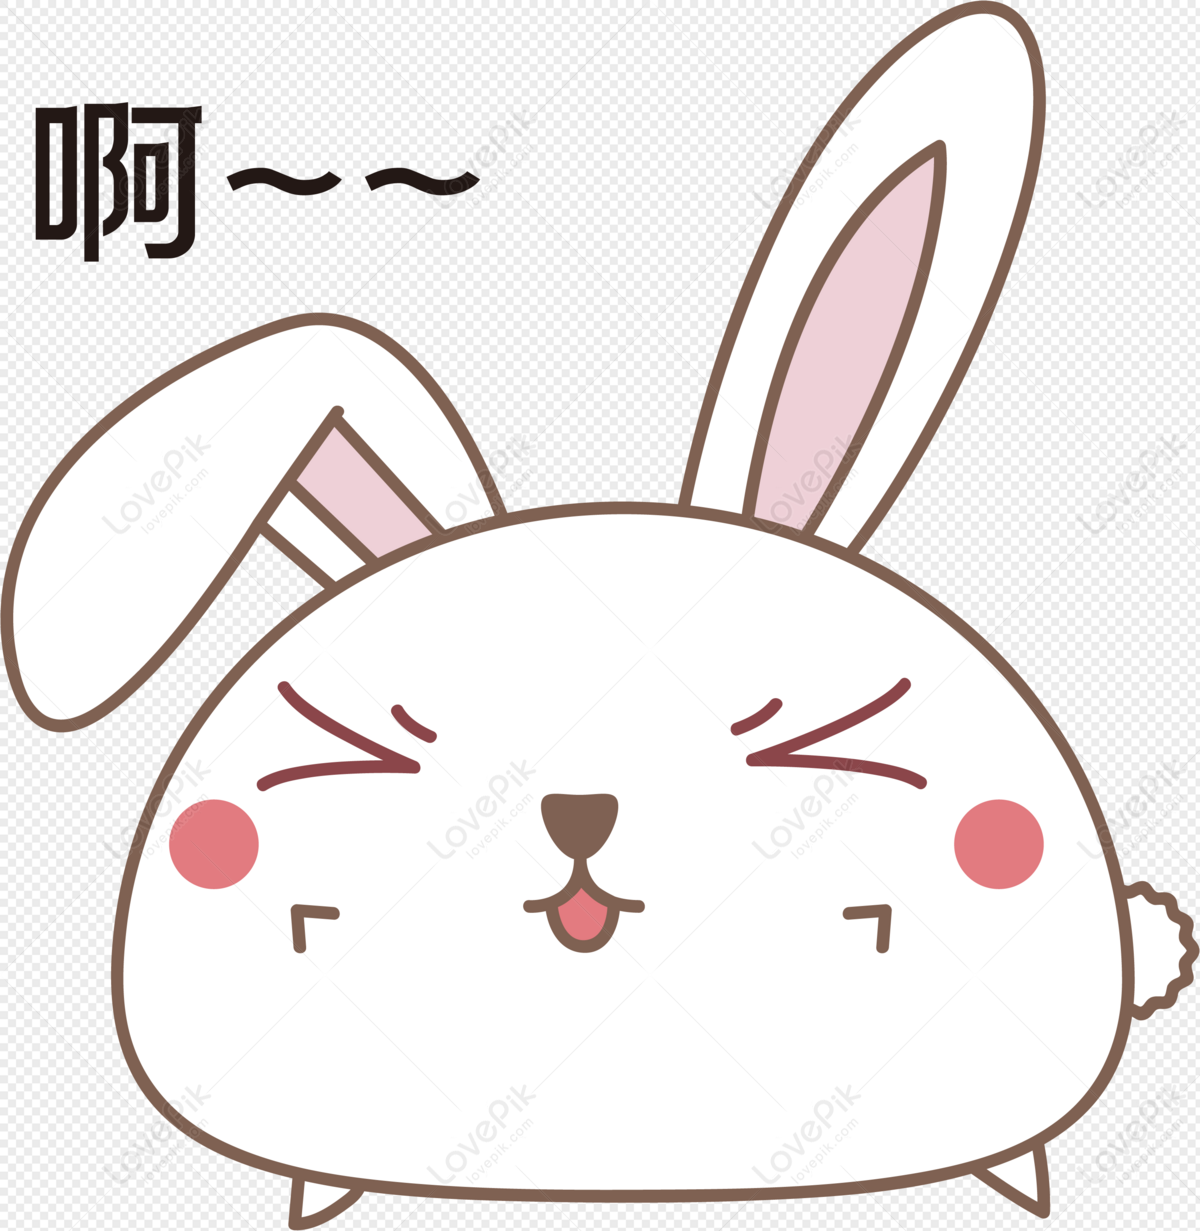 Thỏ phiền phức PNG là biểu tượng của sự ngốc nghếch, đáng yêu và ngộ nghĩnh. Hãy thưởng thức những hình ảnh này để cho một ngày mới đáng yêu và vui vẻ hơn nhé.